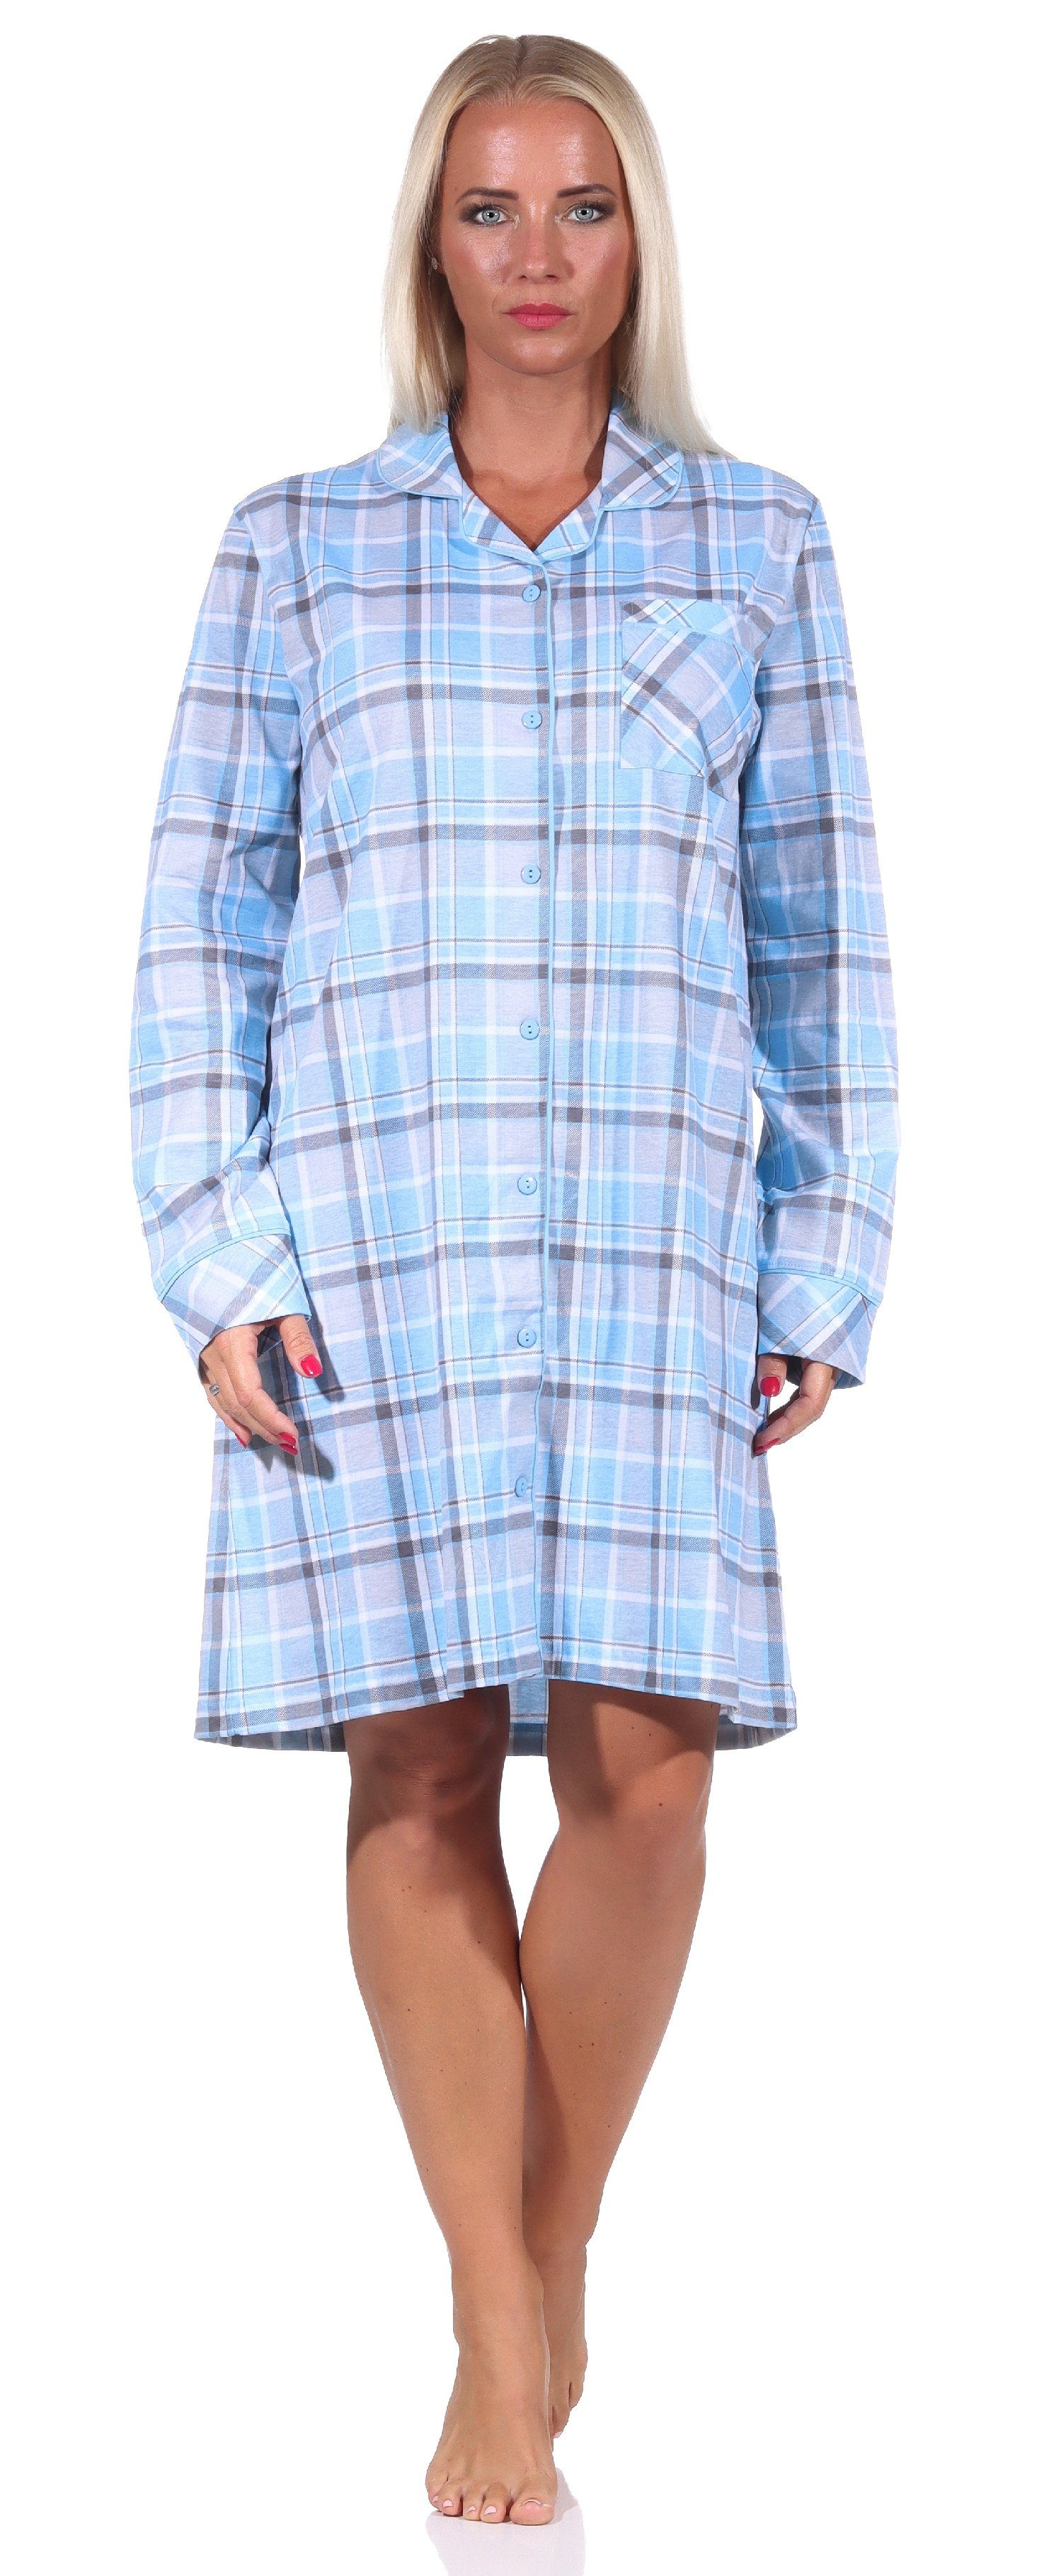 Normann Nachthemd Damen Nachthemd langarm in Karopotik zum knöpfen in Jersey Qualität hellblau | Nachthemden